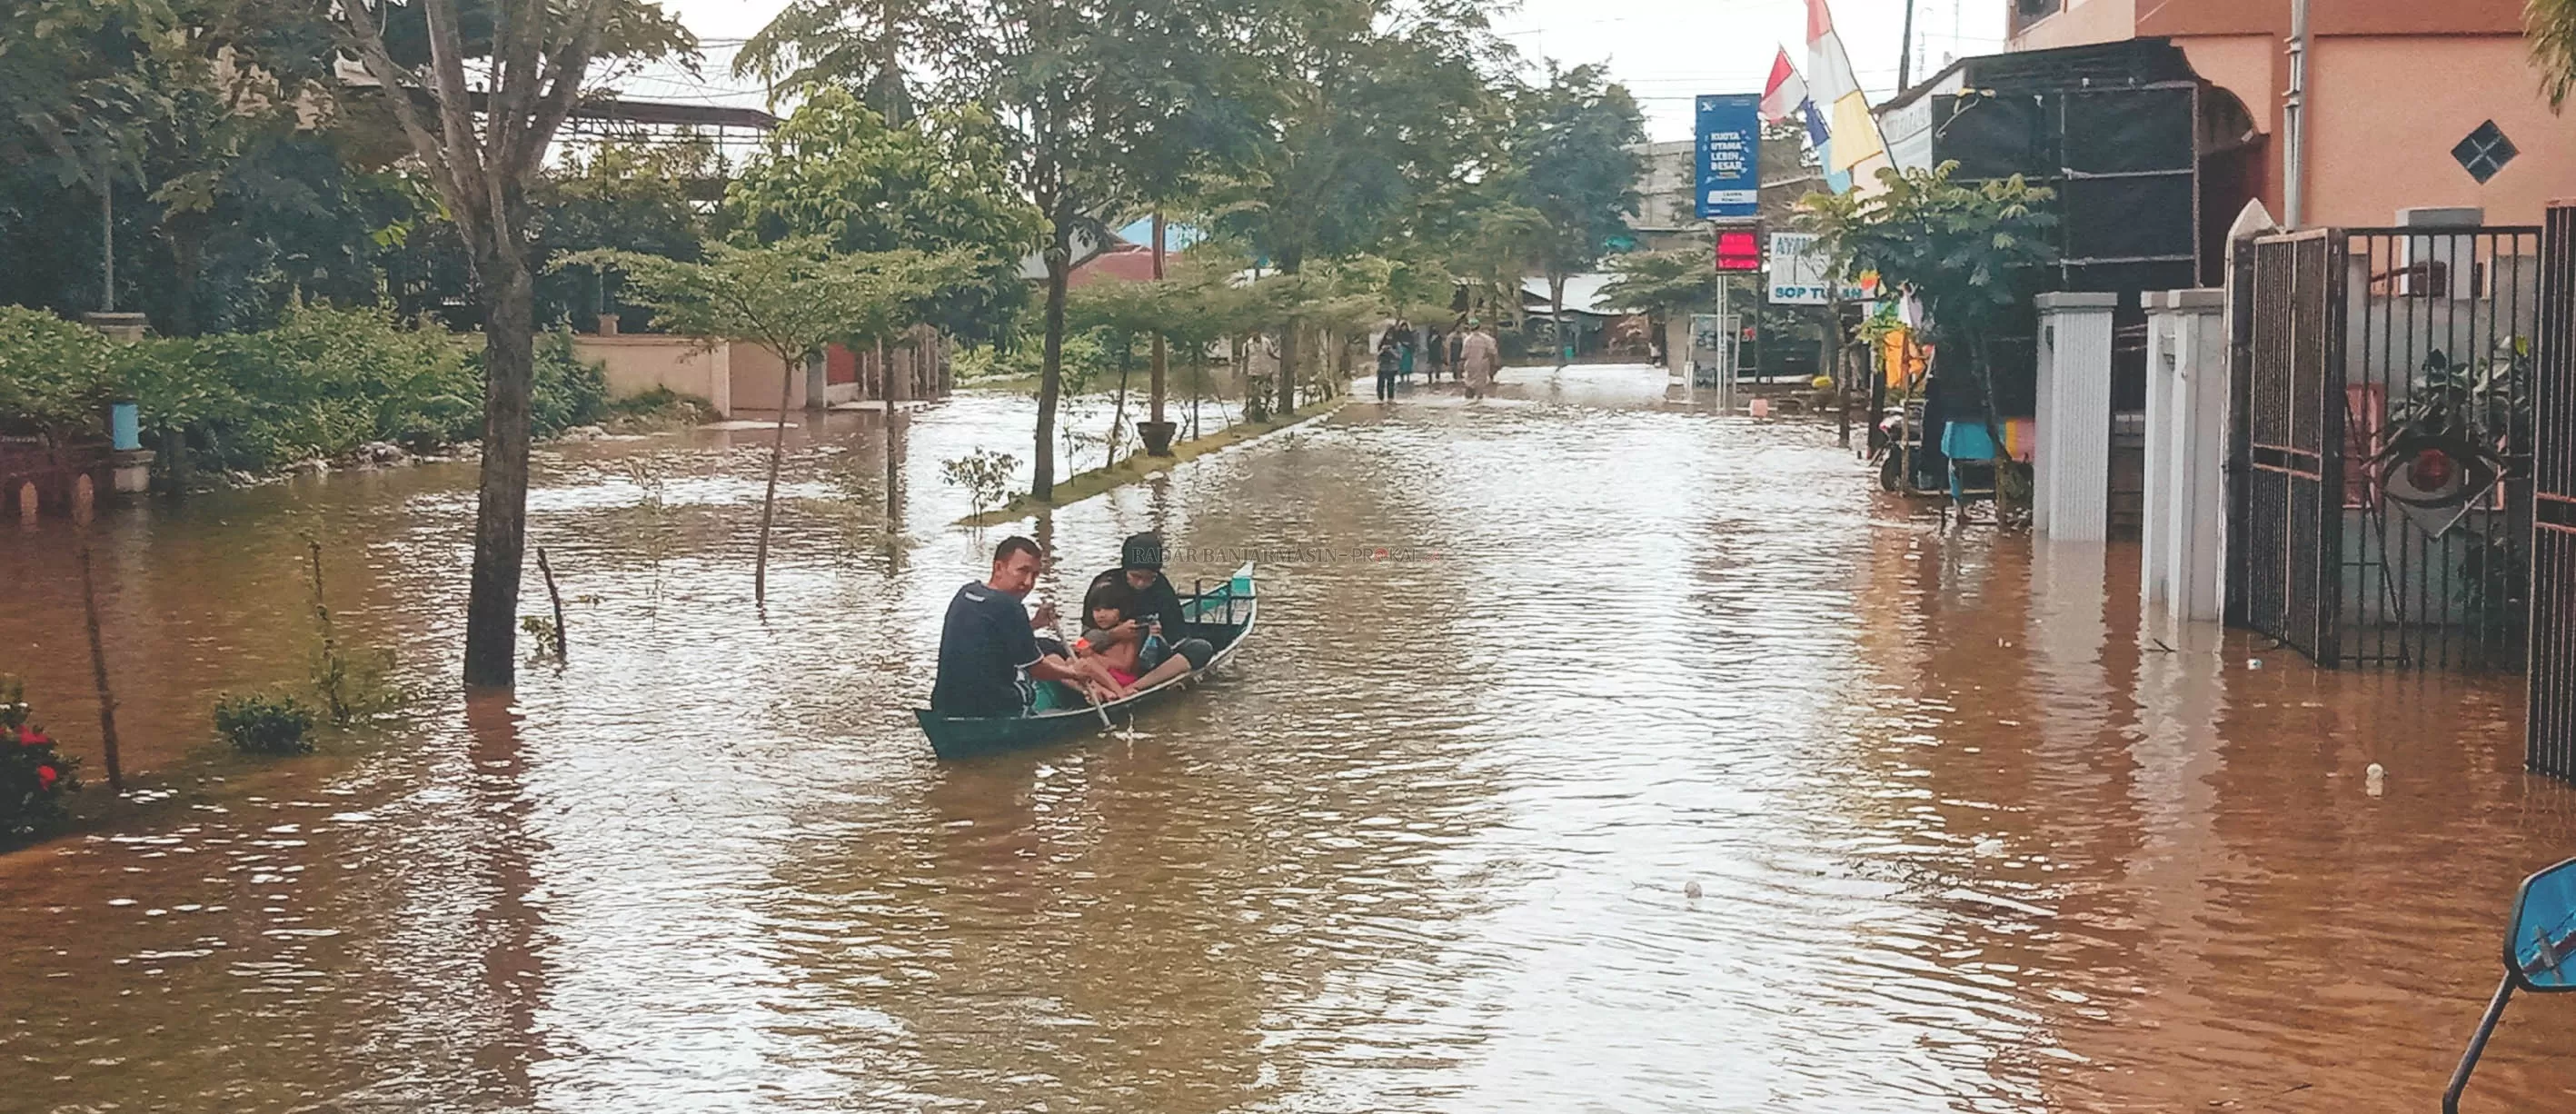 JADI SUNGAI: Warga di Jalan Abdul Gani Ma'jidi memilih menggunakan perahu untuk transportasi. | Foto: Muhammad Akbar/Radar Banjarmasin